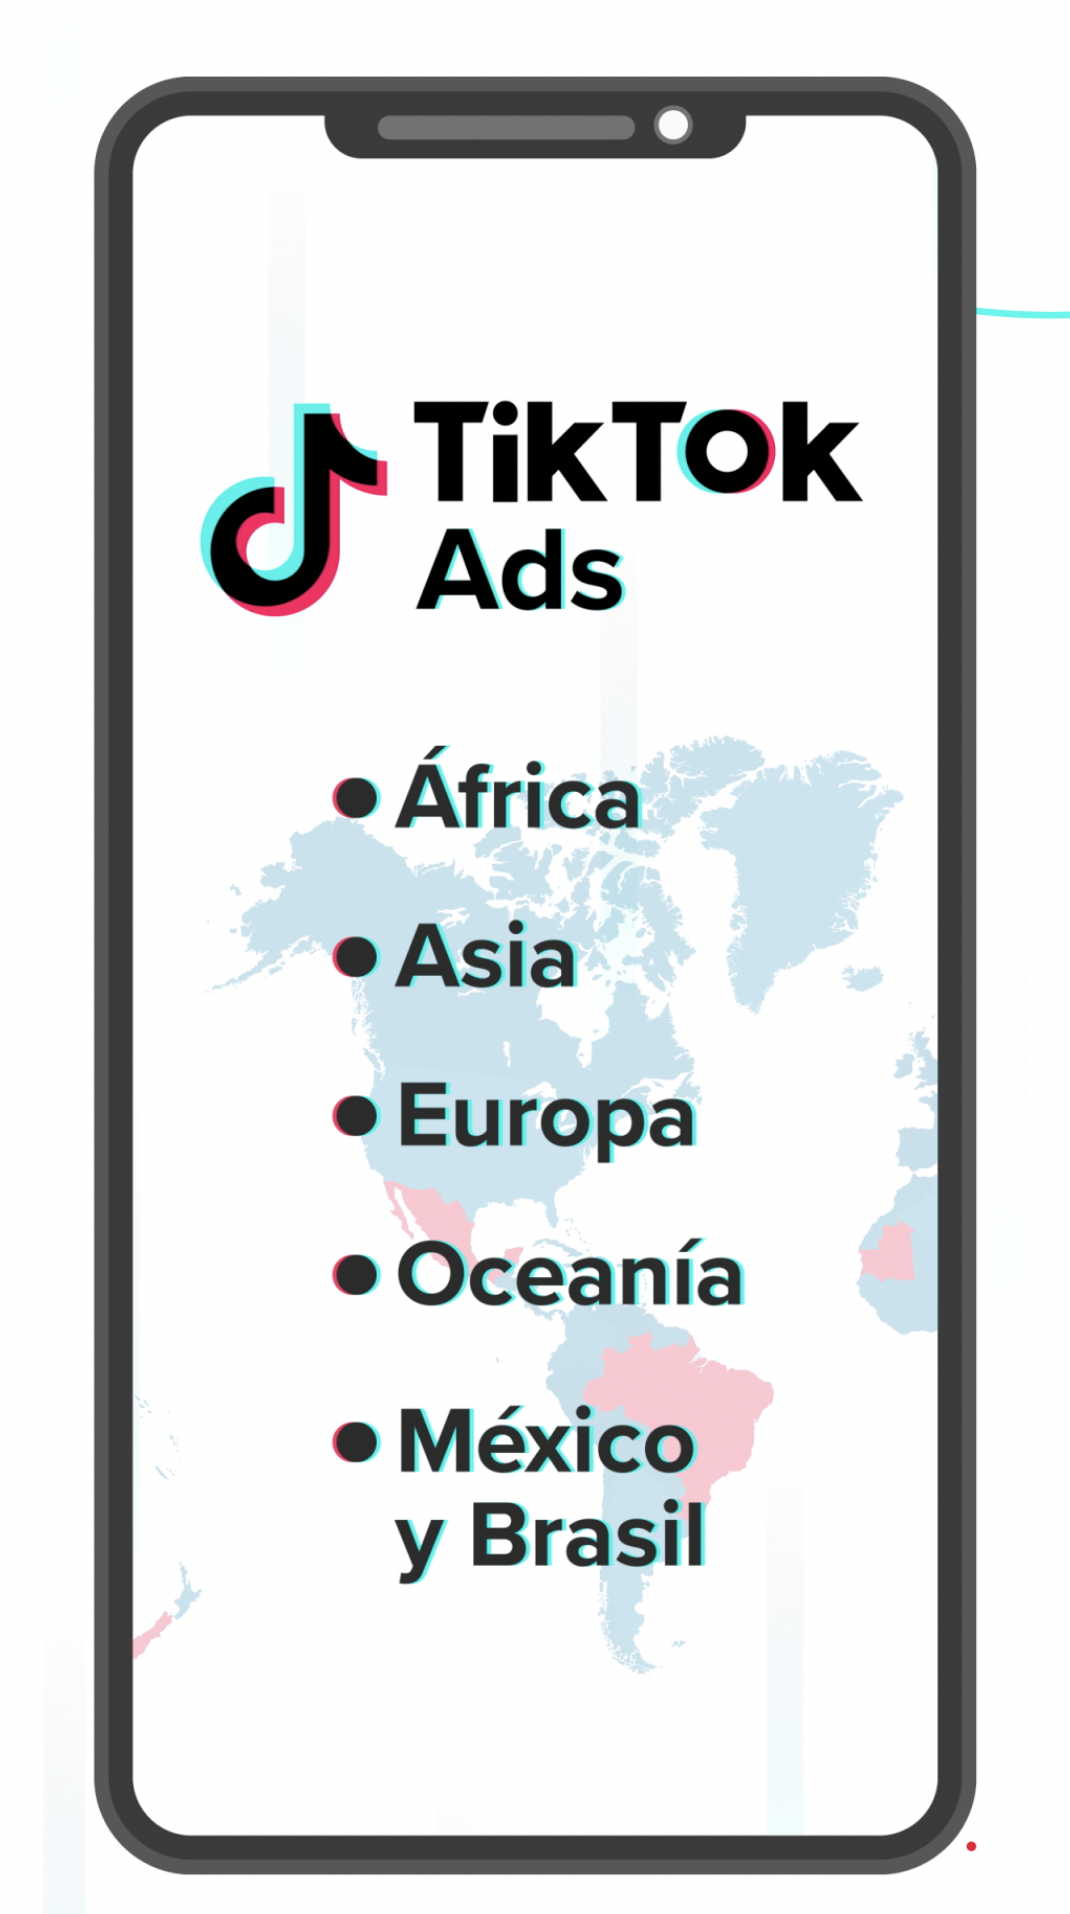 Es importante tener en cuenta que TikTok Ads no está disponible en todos los países, por lo que solo se puede crear contenido pago en ciertas regiones del mundo, incluyendo África, Asia, Europa, Oceanía y algunos países de Latinoamérica.